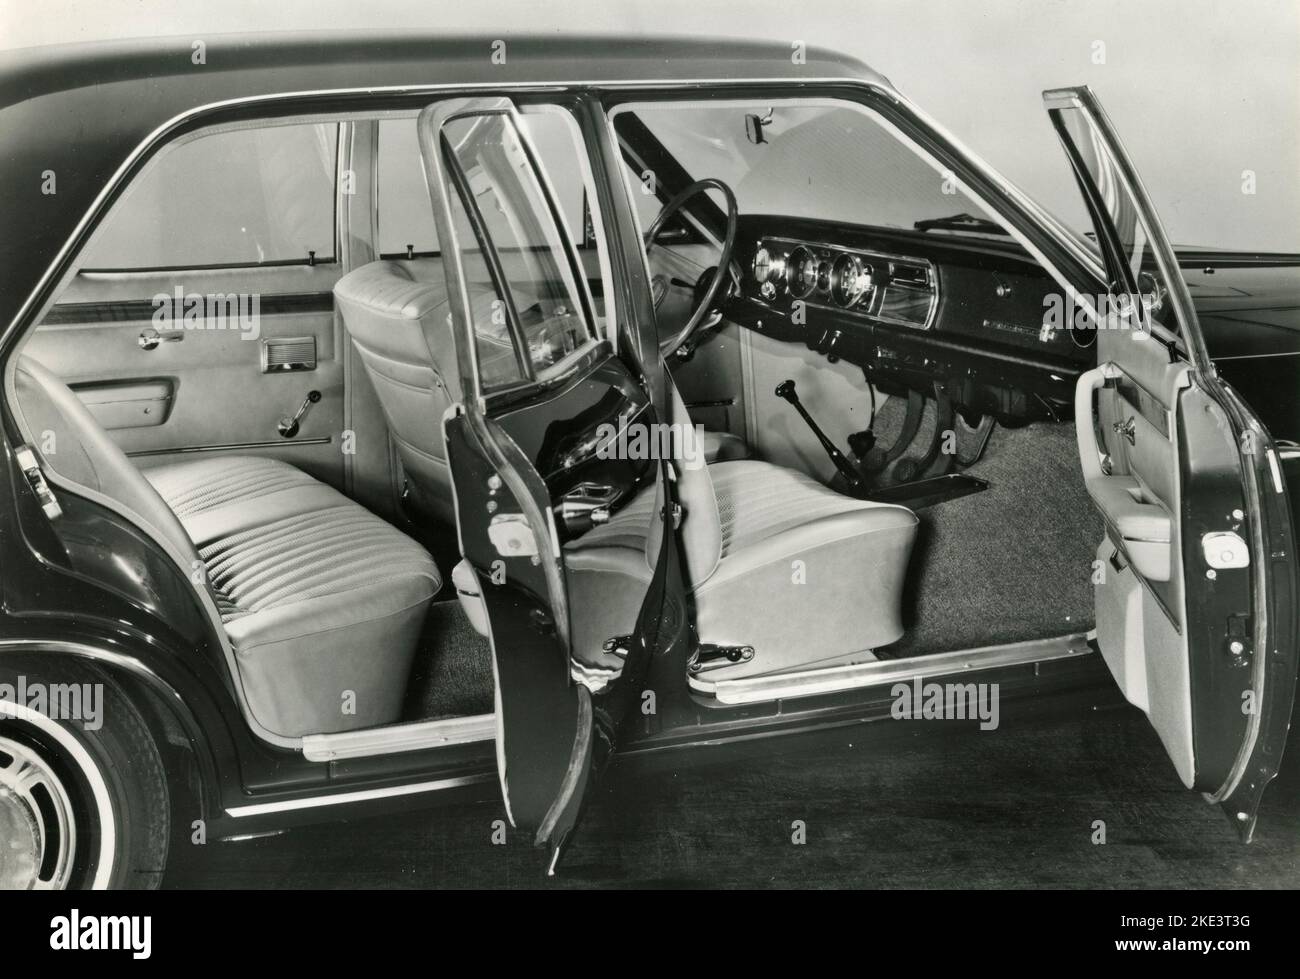 Vue intérieure de la voiture Opel Commodore 4 portes, Allemagne 1967 Banque D'Images